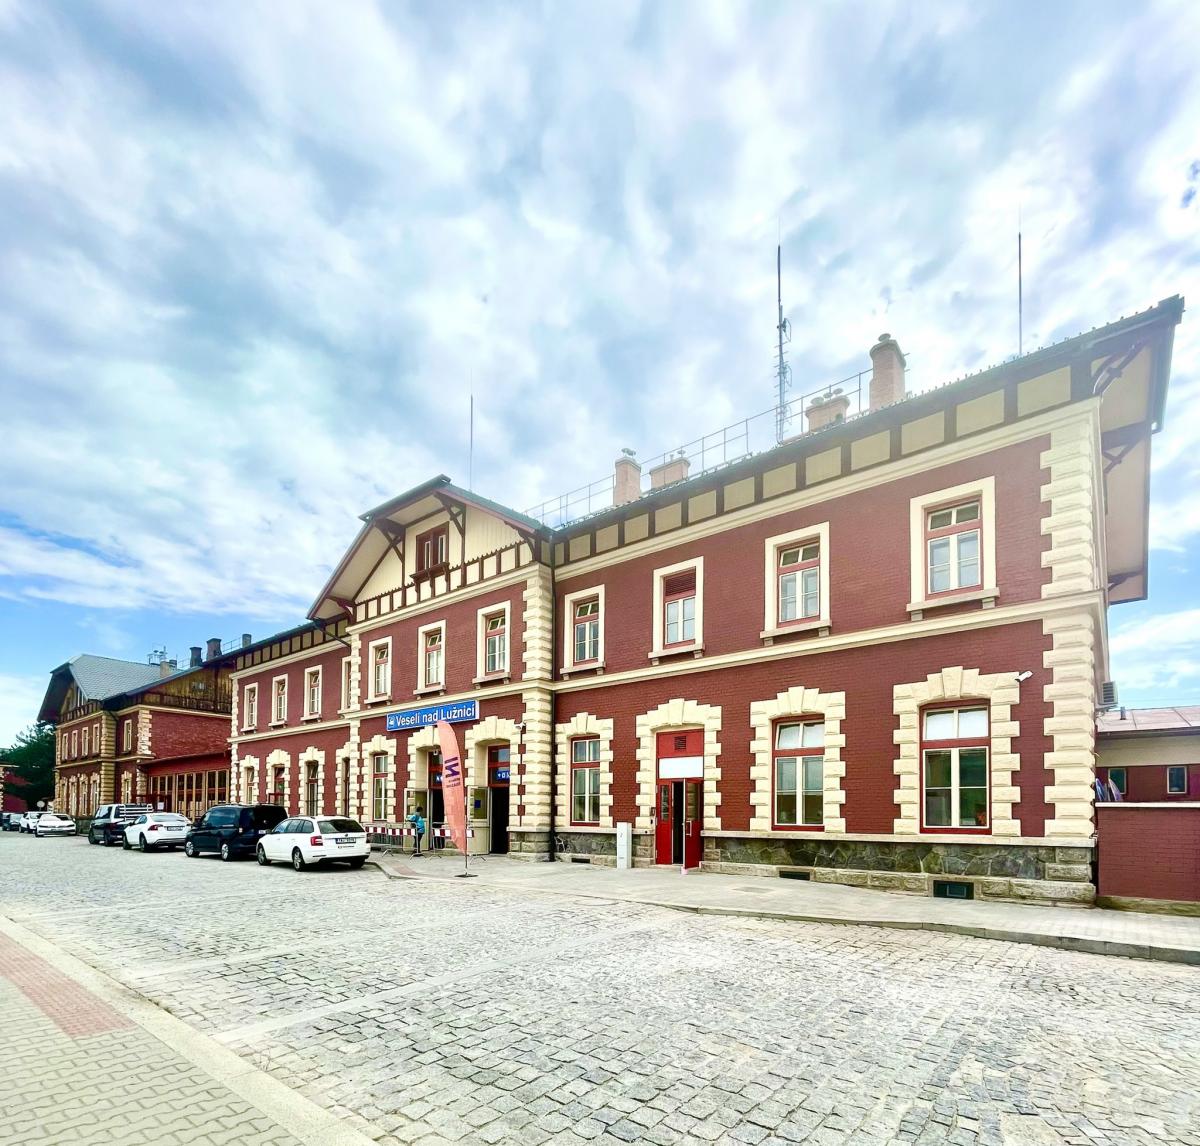 Ve čtvrtek 16. června se slavnostně otevřela zrekonstruovaná nádražní budova ve Veselí nad Lužnicí!